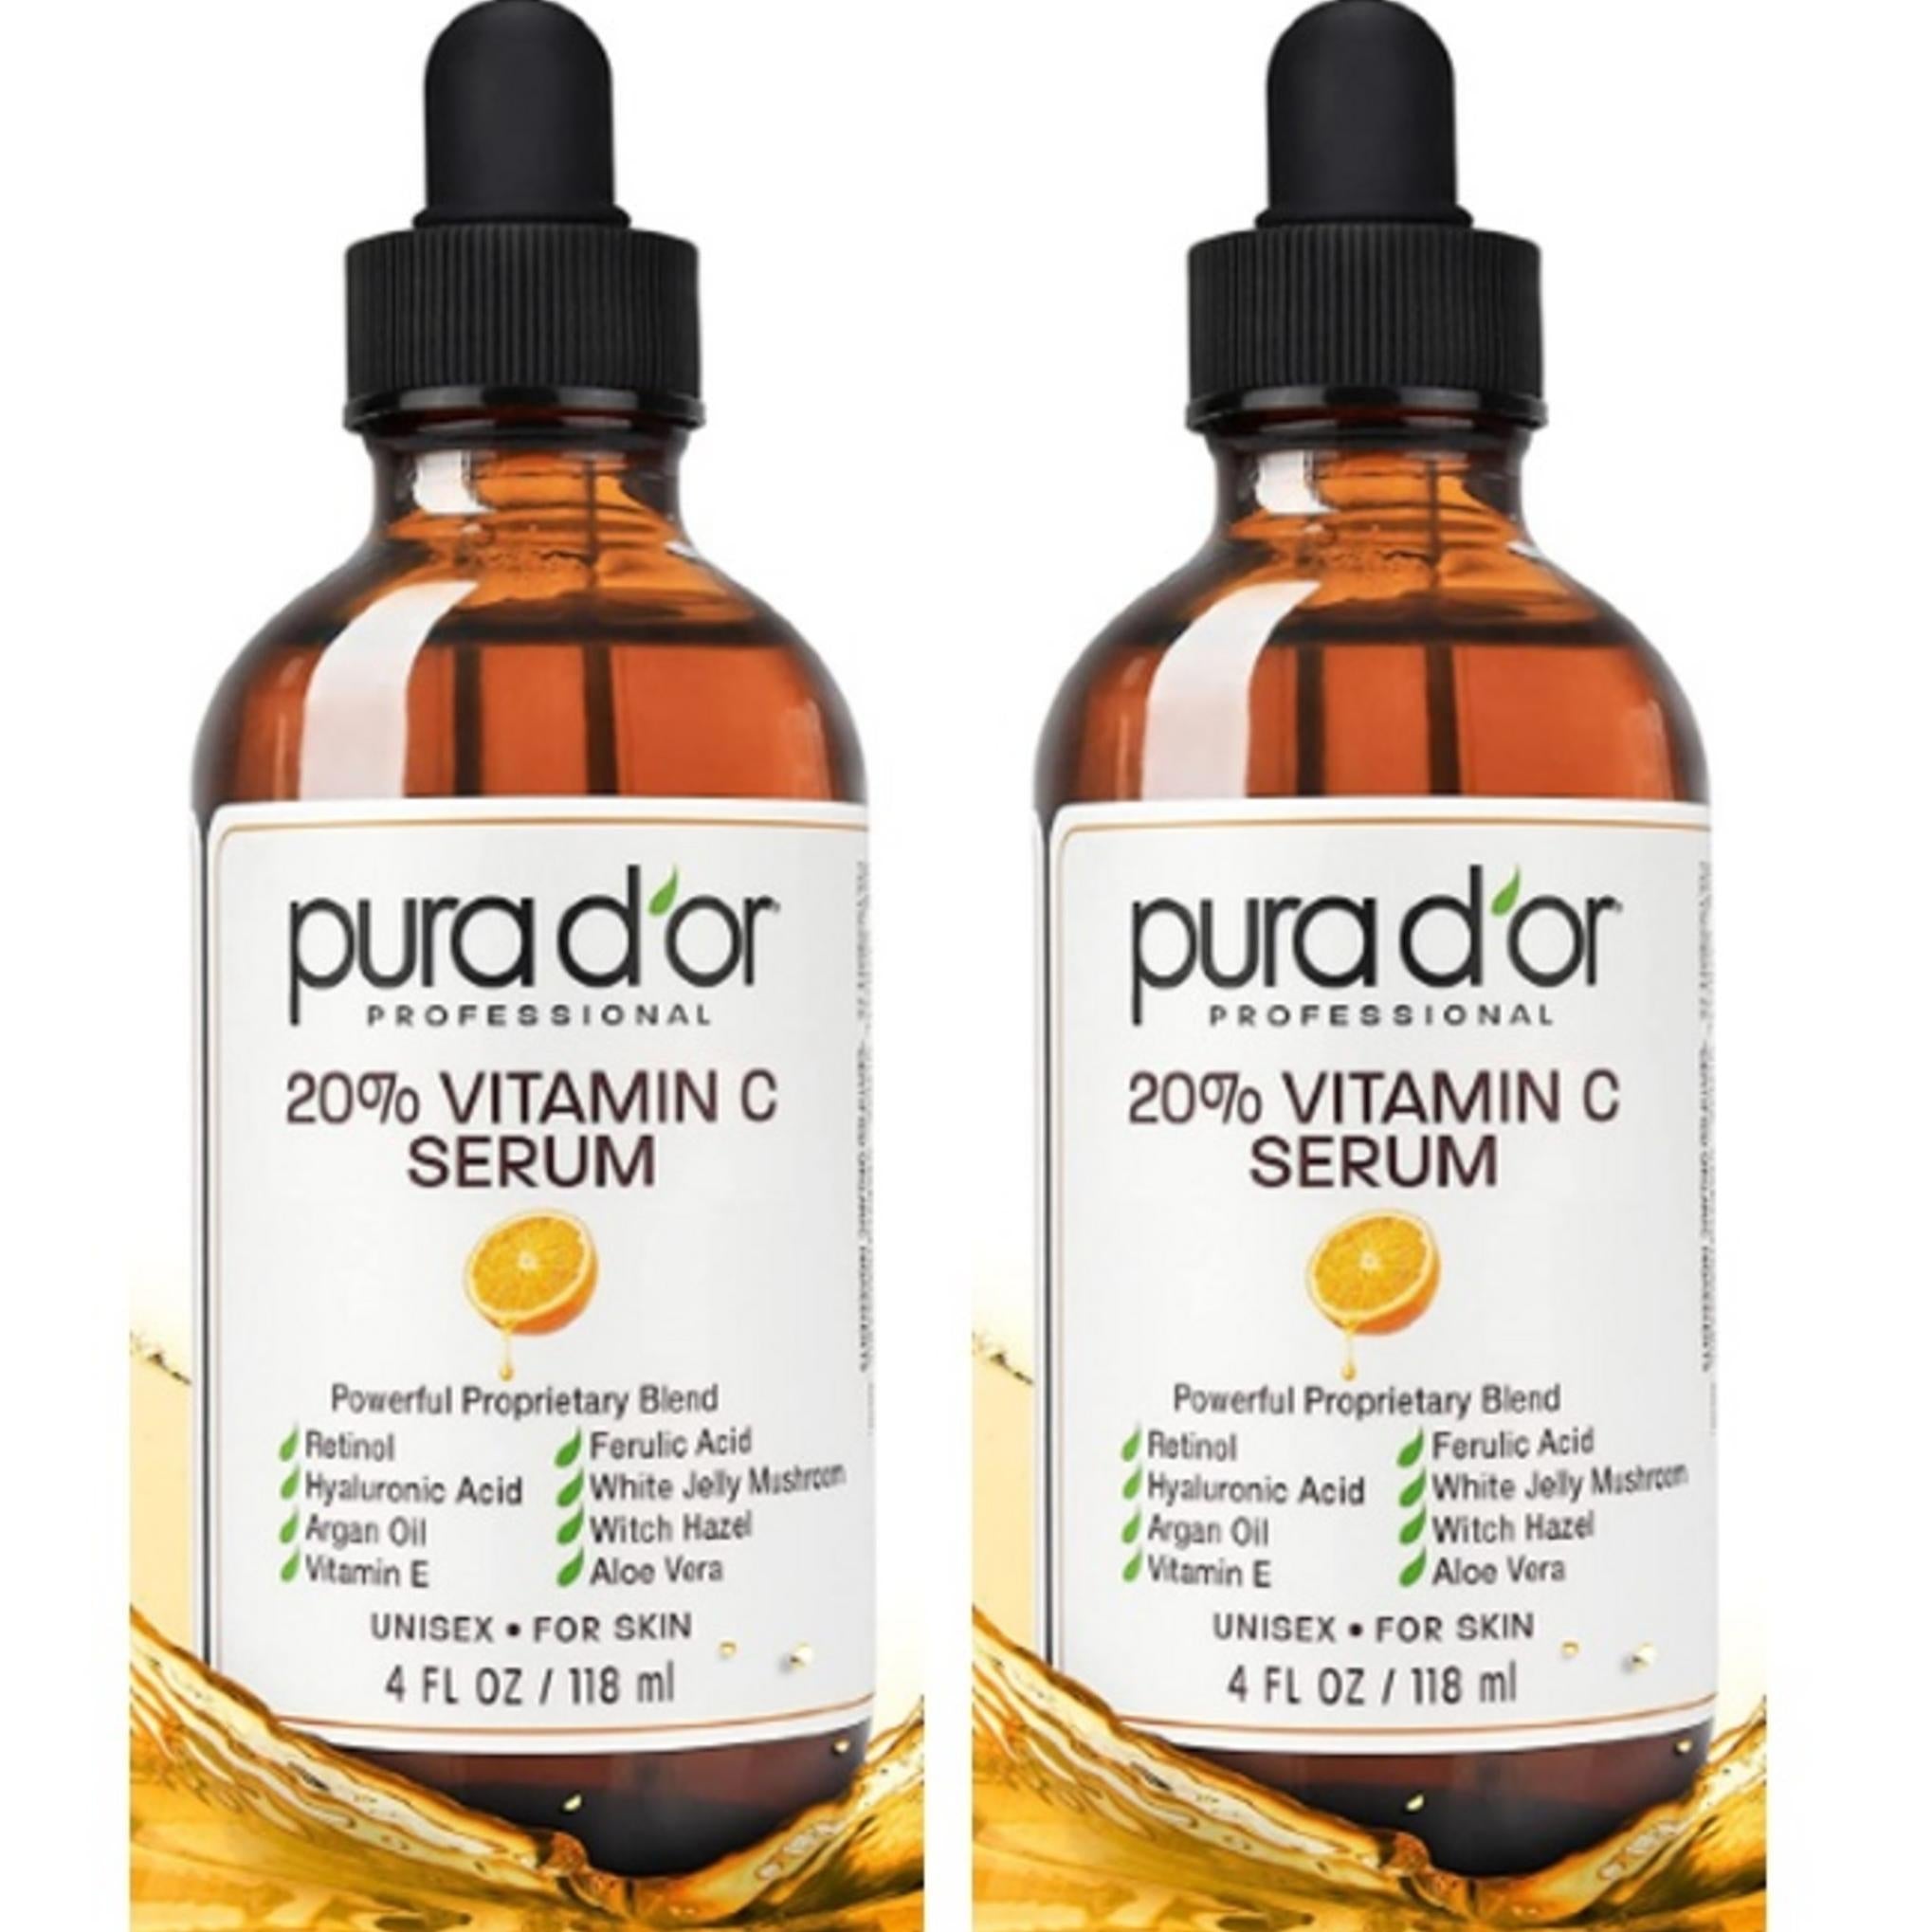 Puridore 20% Vitamin C Serum